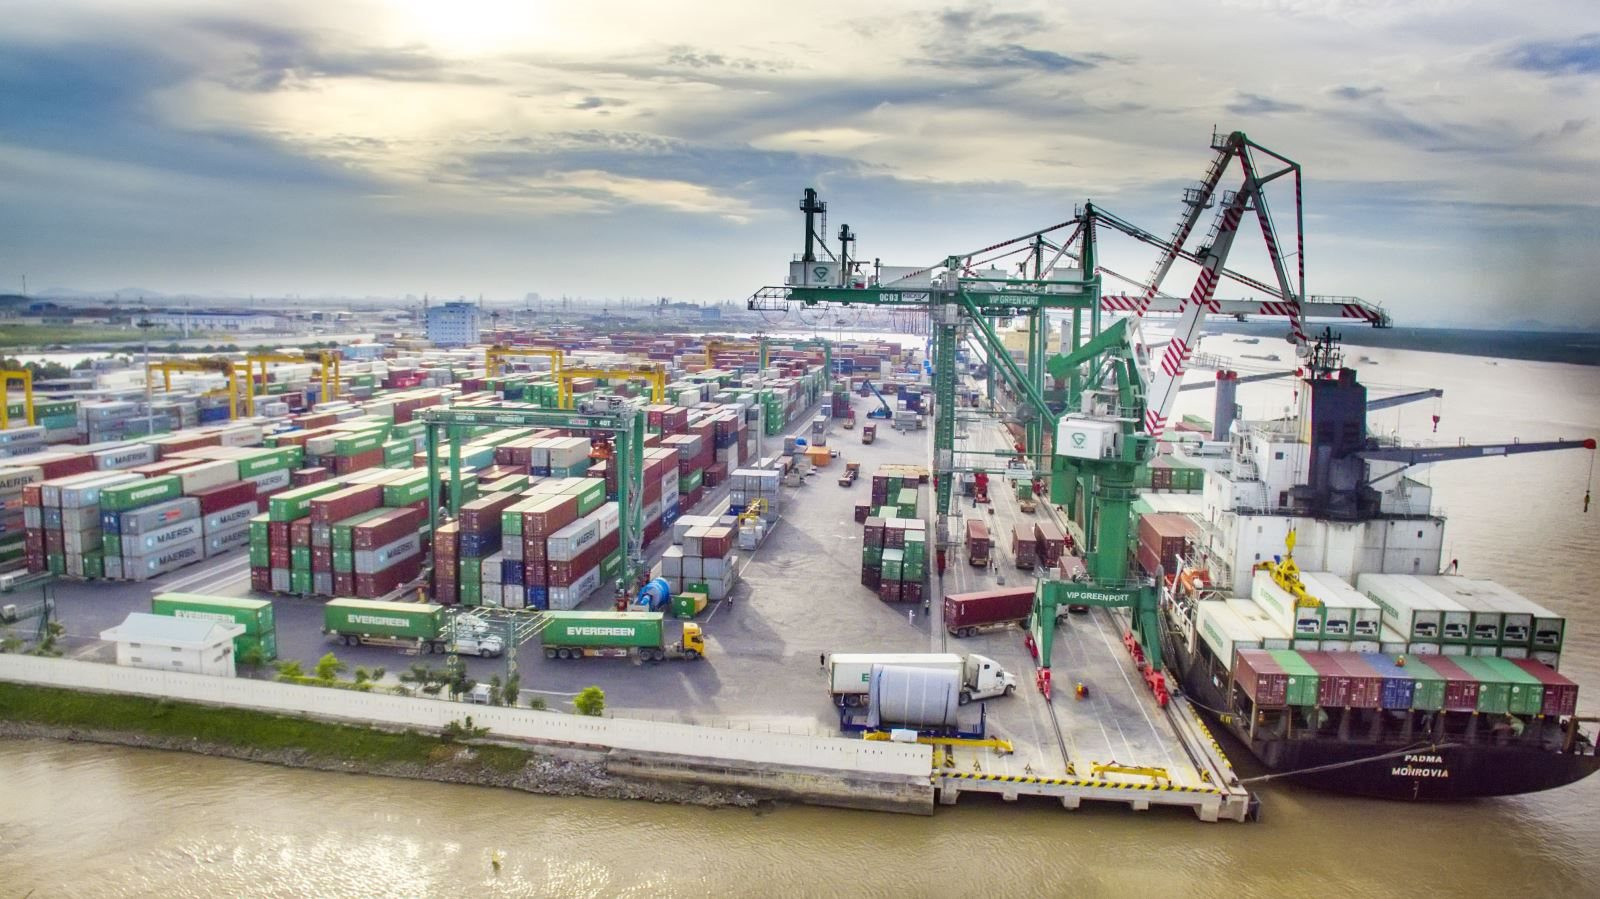 Quốc gia nhập khẩu hàng hóa nhiều nhất từ Việt Nam: Chi 28,4 tỷ USD để mua những gì?